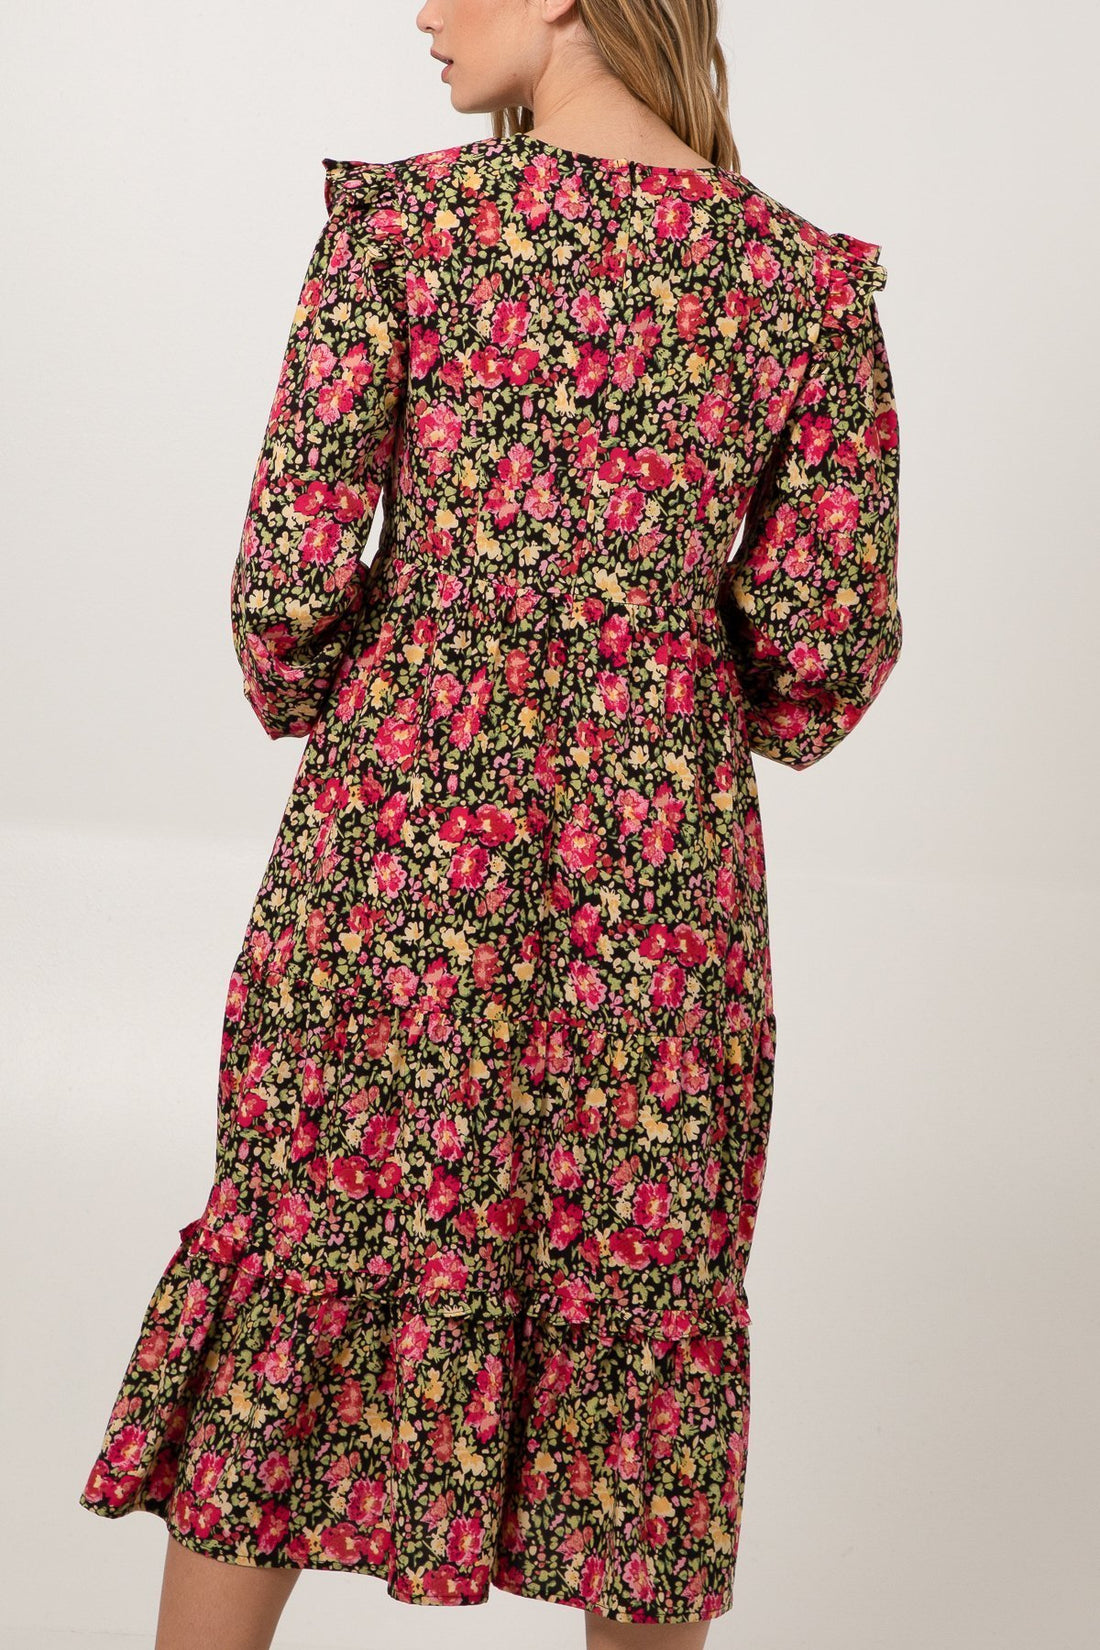 Jessica - Floral Print Frill Shoulder Midi Dress - Pinstripe